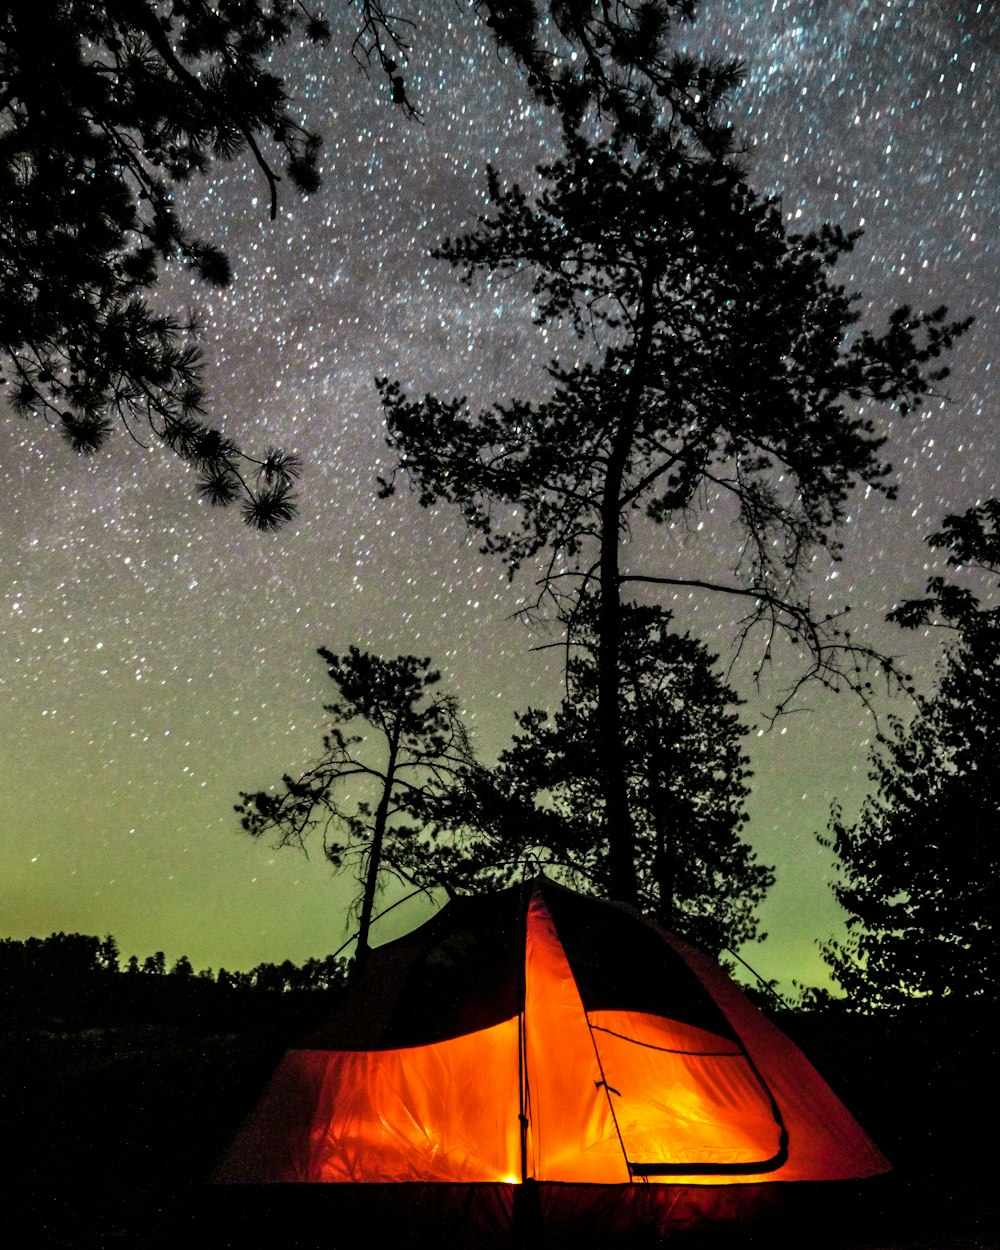 별이 빛나는 밤 동안 주황색과 검은 색 텐트 옆에 나무의 실루엣 사진